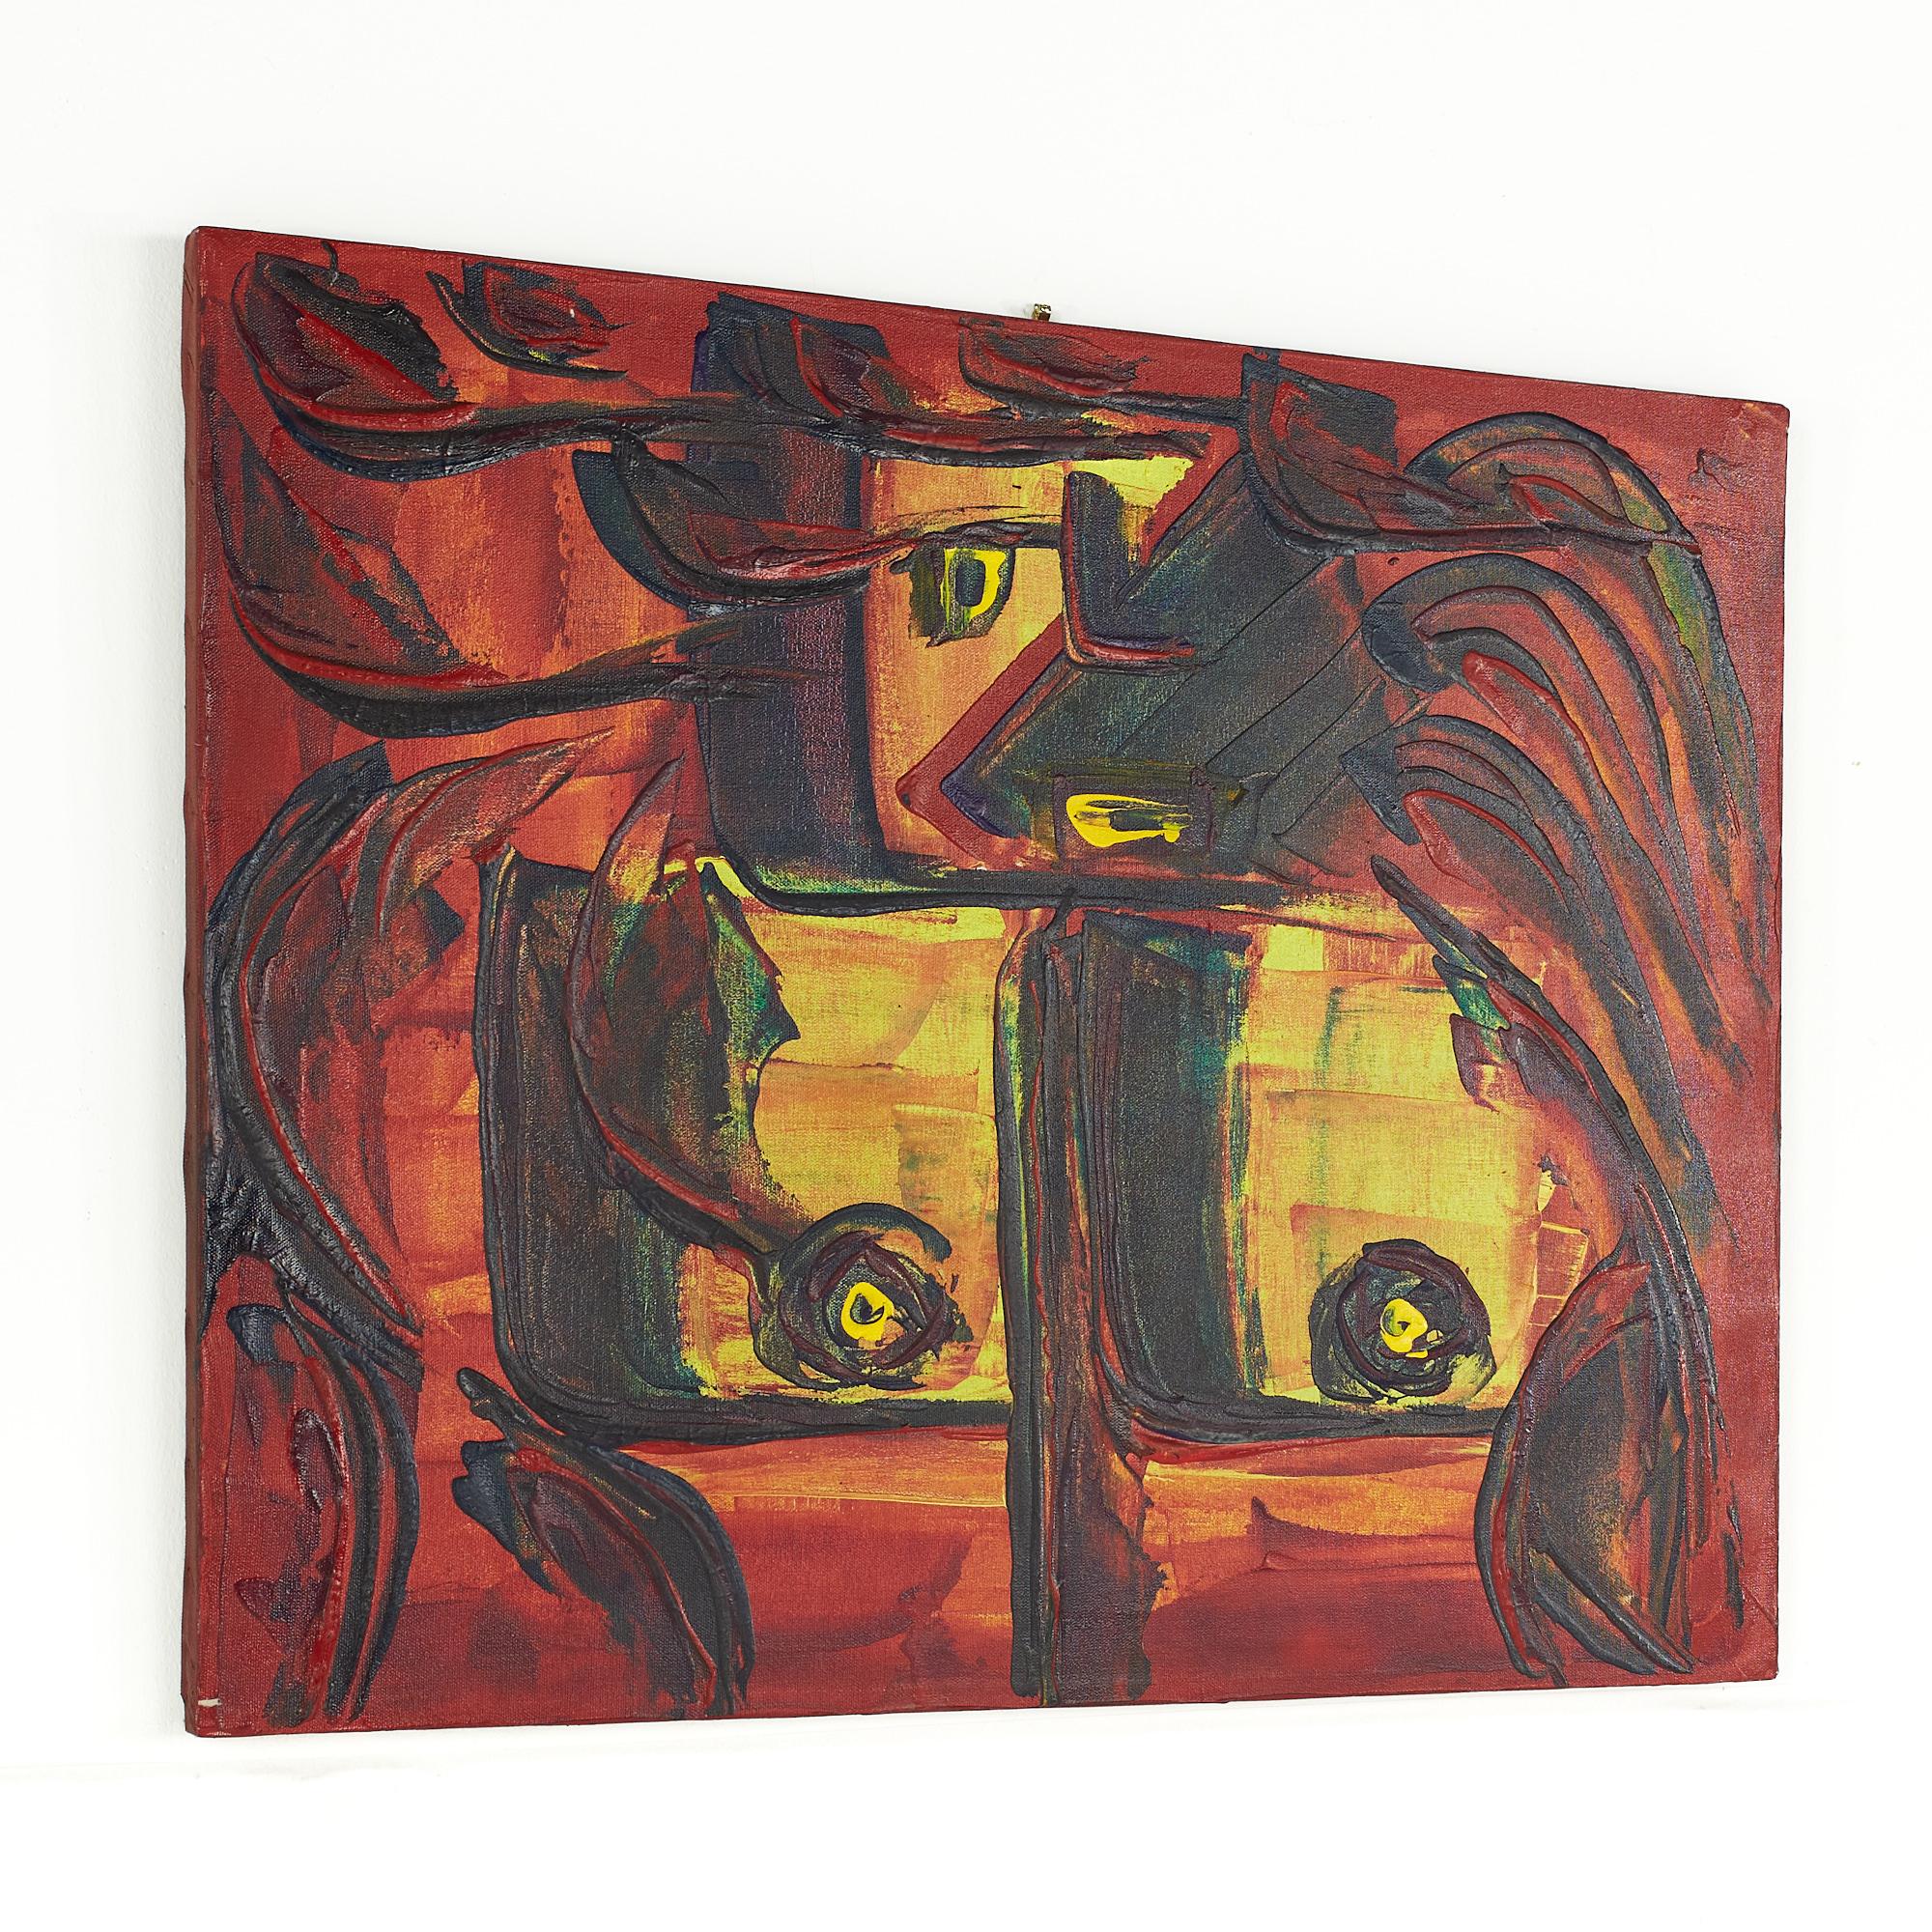 Bruce Myers peinture abstraite du milieu du siècle, huile sur toile originale no. 5

Cette peinture mesure : 22 pouces de largeur x 0,75 pouce de profondeur x 28 pouces de hauteur.

Cette peinture est en bonne condition vintage.

Nous prenons